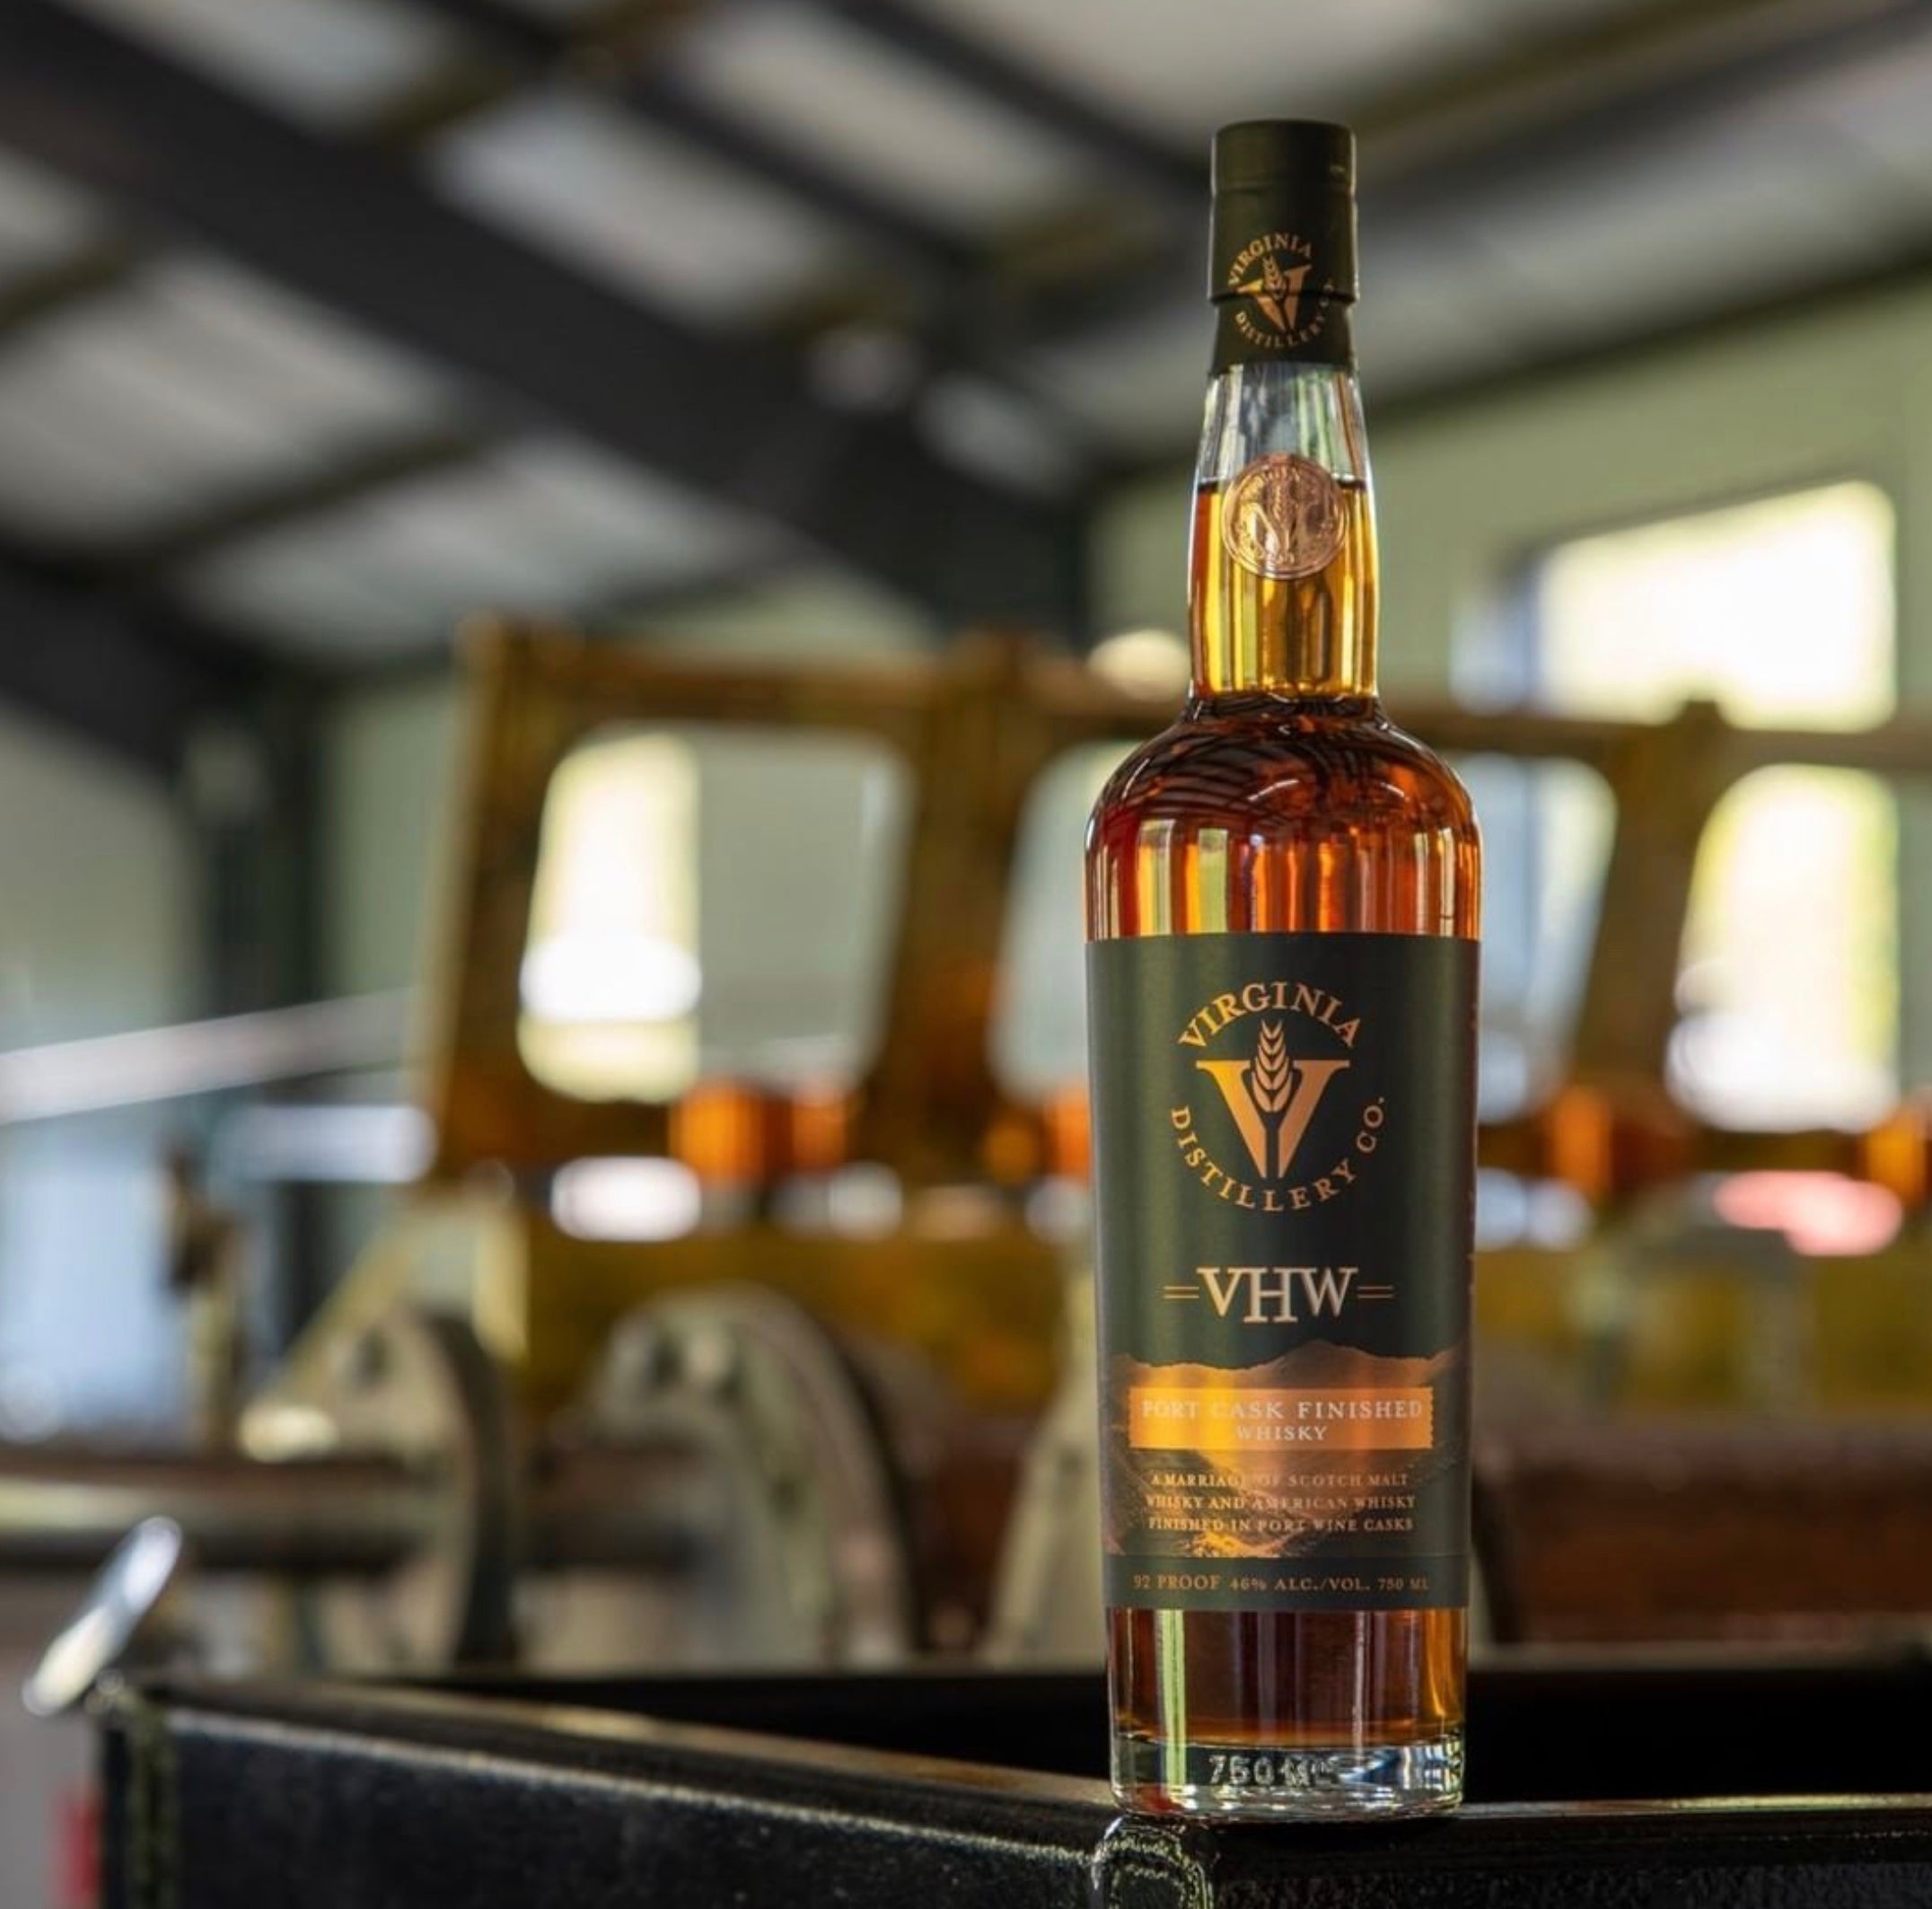 Virginia Distillery Co. VHW Port Cask Finished Whisky